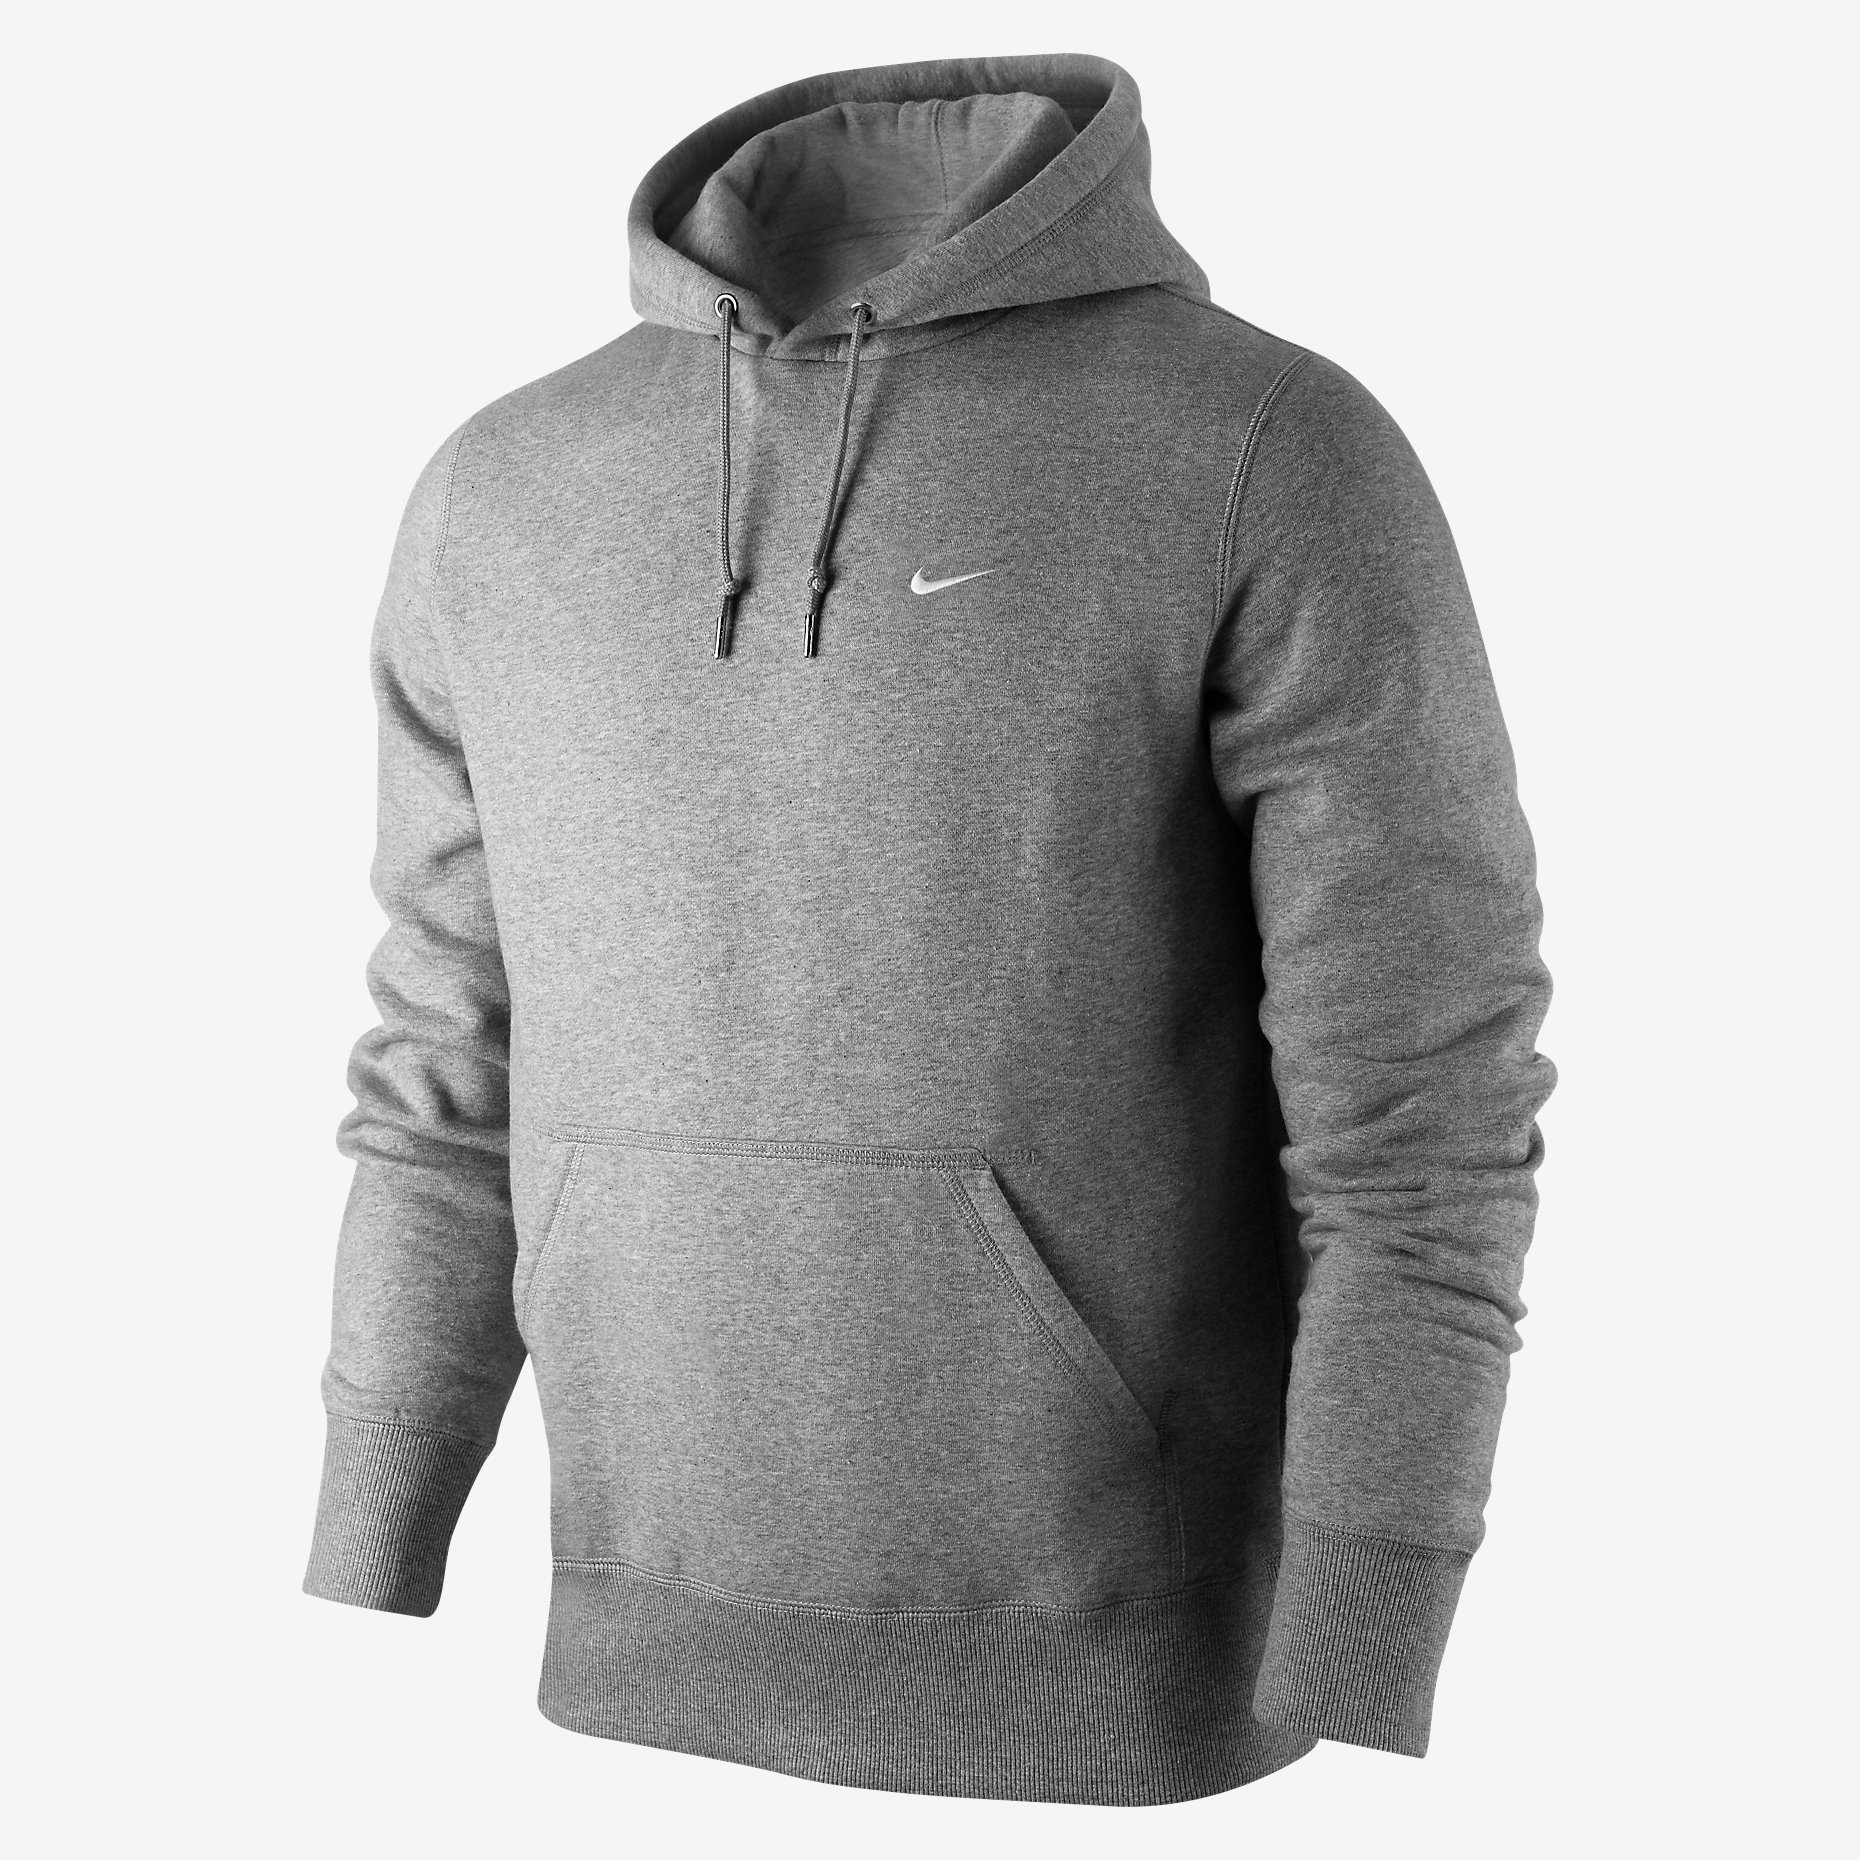 Nike New Men's Hooded Overhead Hooded Sweatshirt Grey Black Blue Hoodie ...